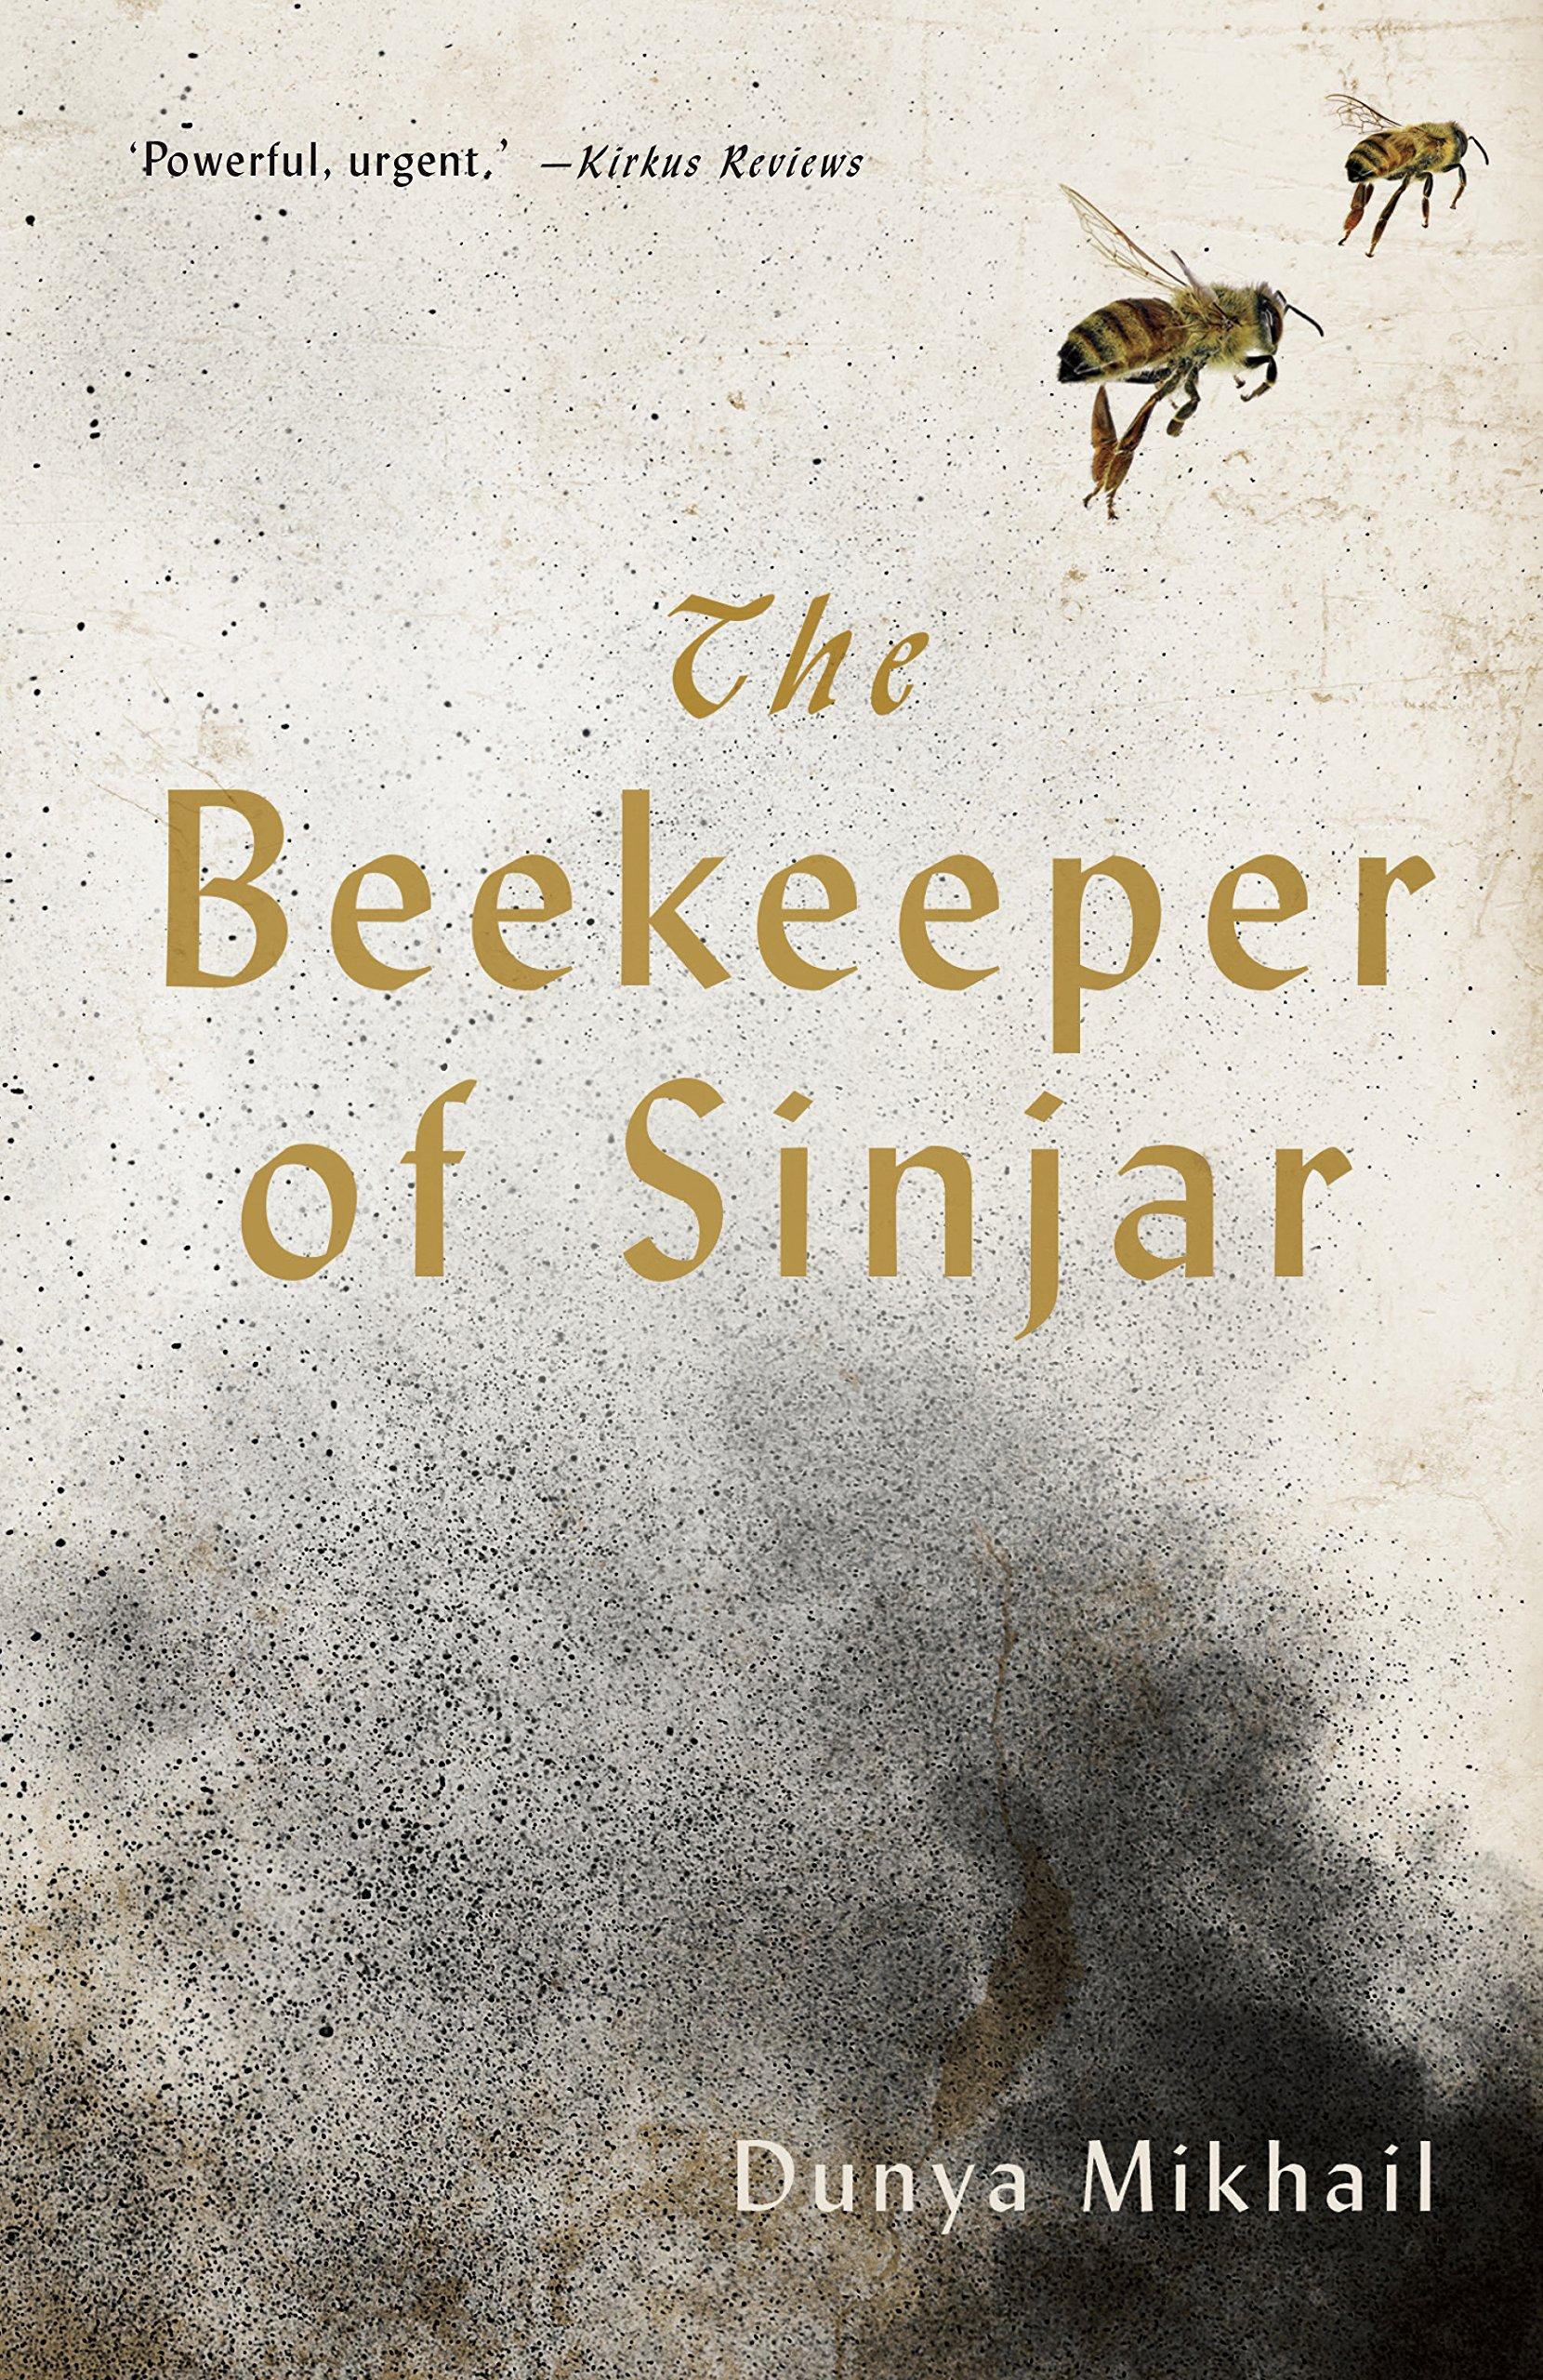 Beekeeper of Sinjar